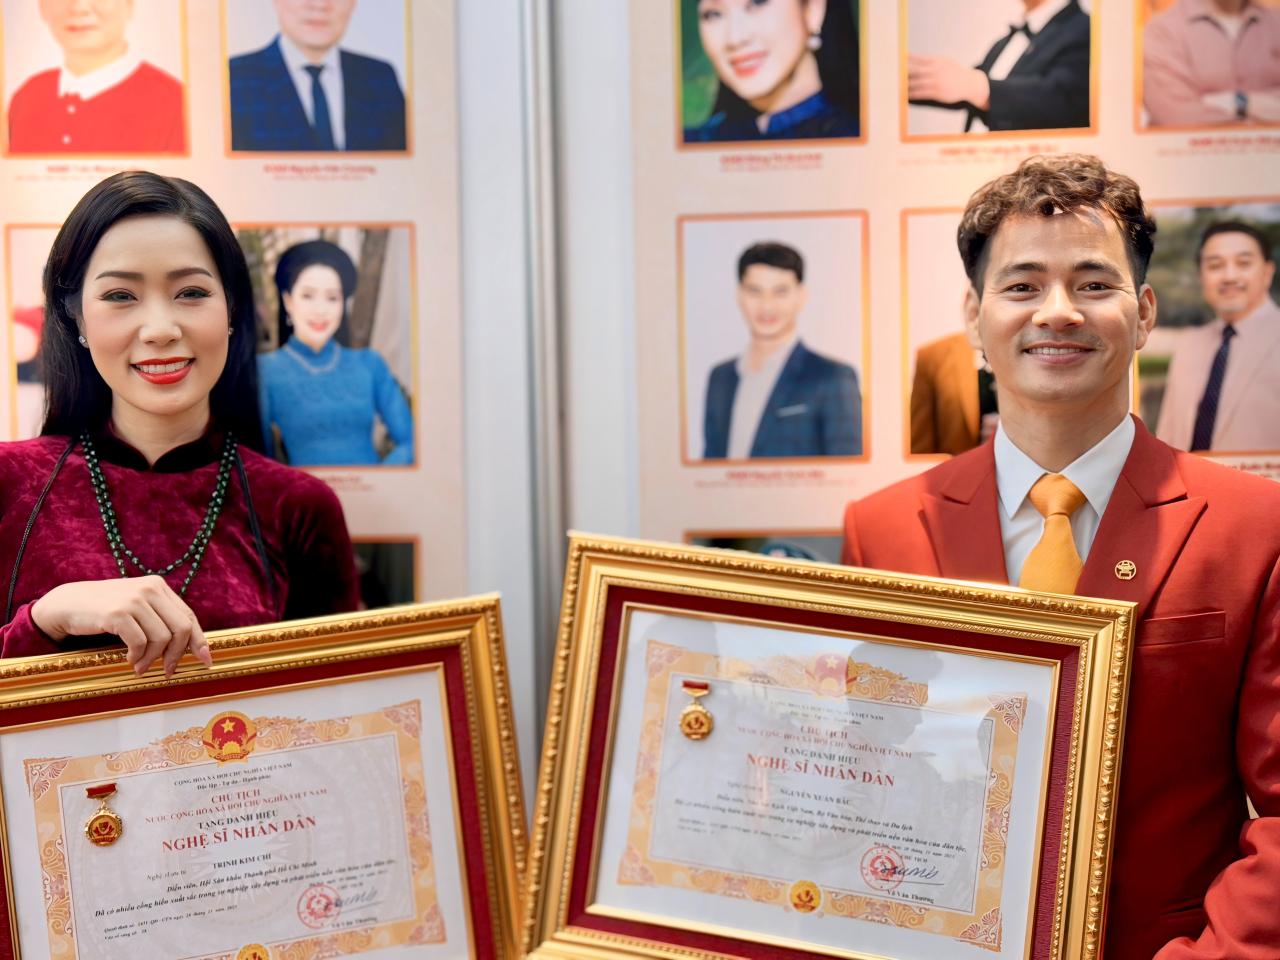 Trịnh Kim Chi nhân danh hiệu NSND 11 Trịnh Kim Chi vinh dự và tự hào nhận danh hiệu Nghệ sĩ Nhân Dân